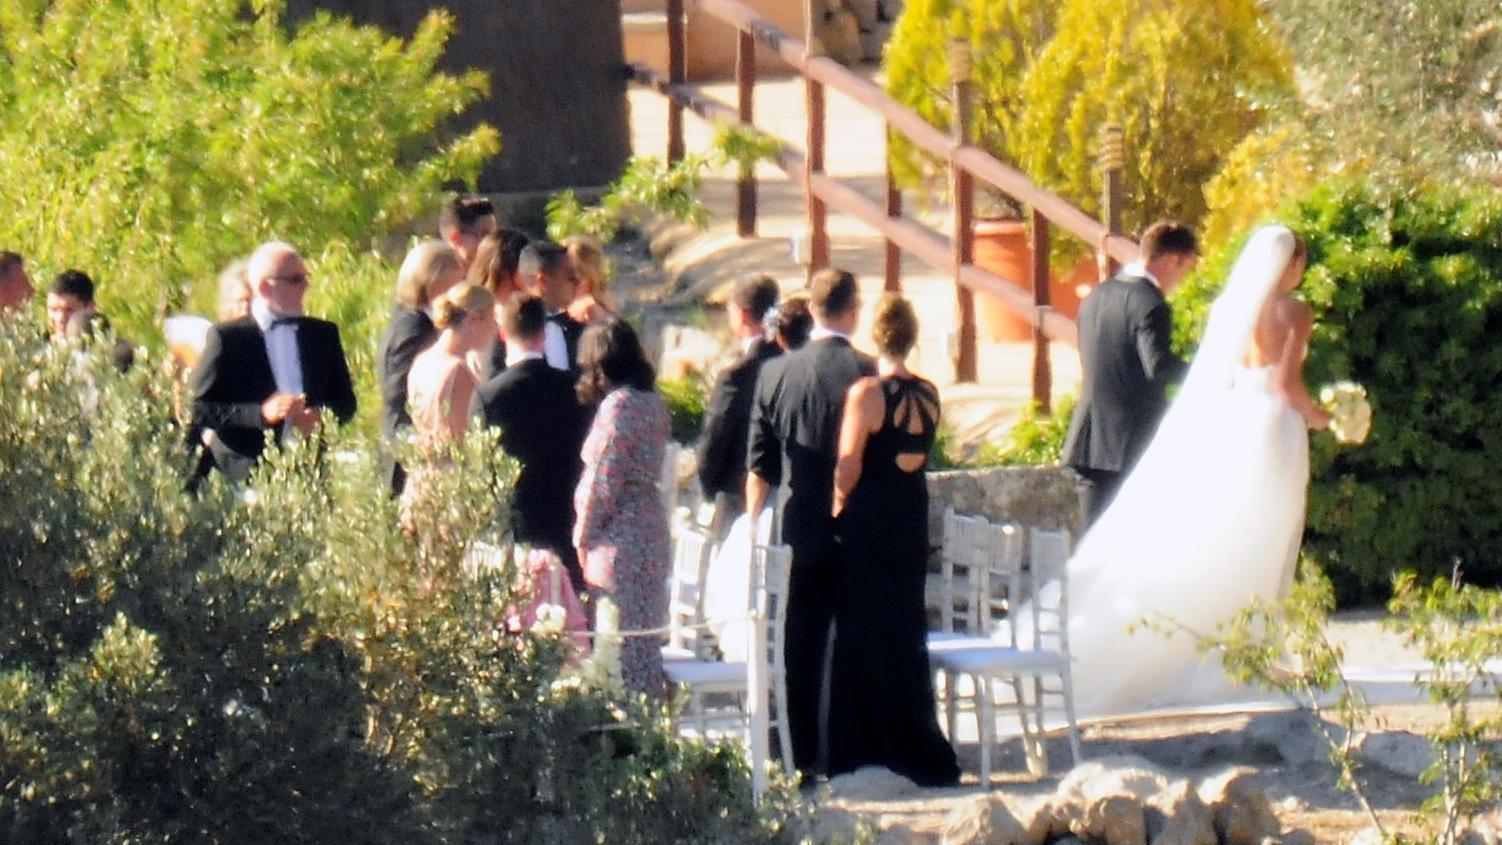 Mario und Ann-Kathrin Götze bei ihrer Hochzeit im Juni 2019 auf Mallorca.